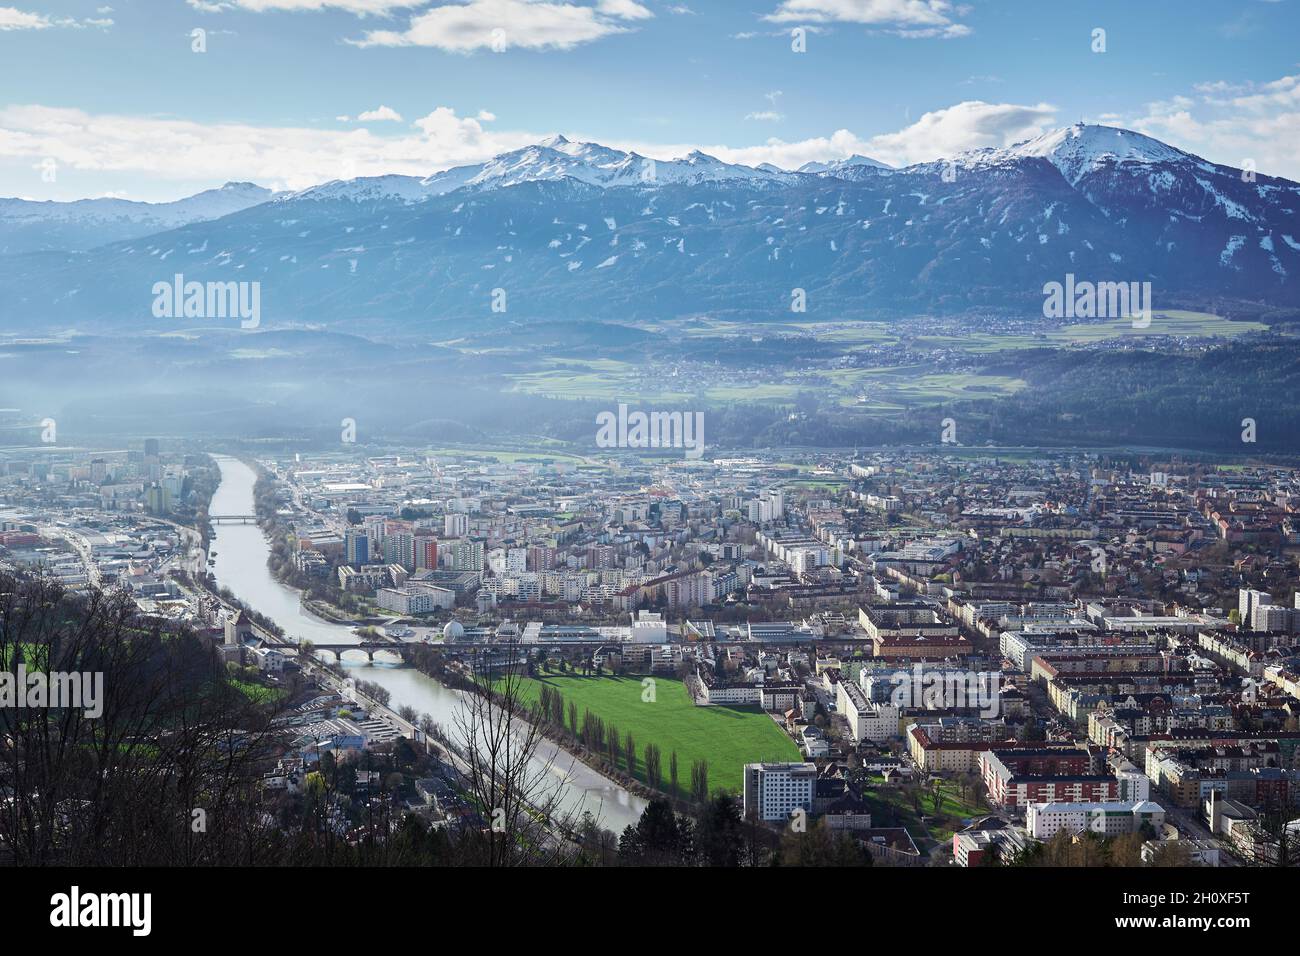 Una vista sulla città di Innsbruck, accanto al fiume Inn, con una grande montagna, il Patscherkofel, sullo sfondo Foto Stock